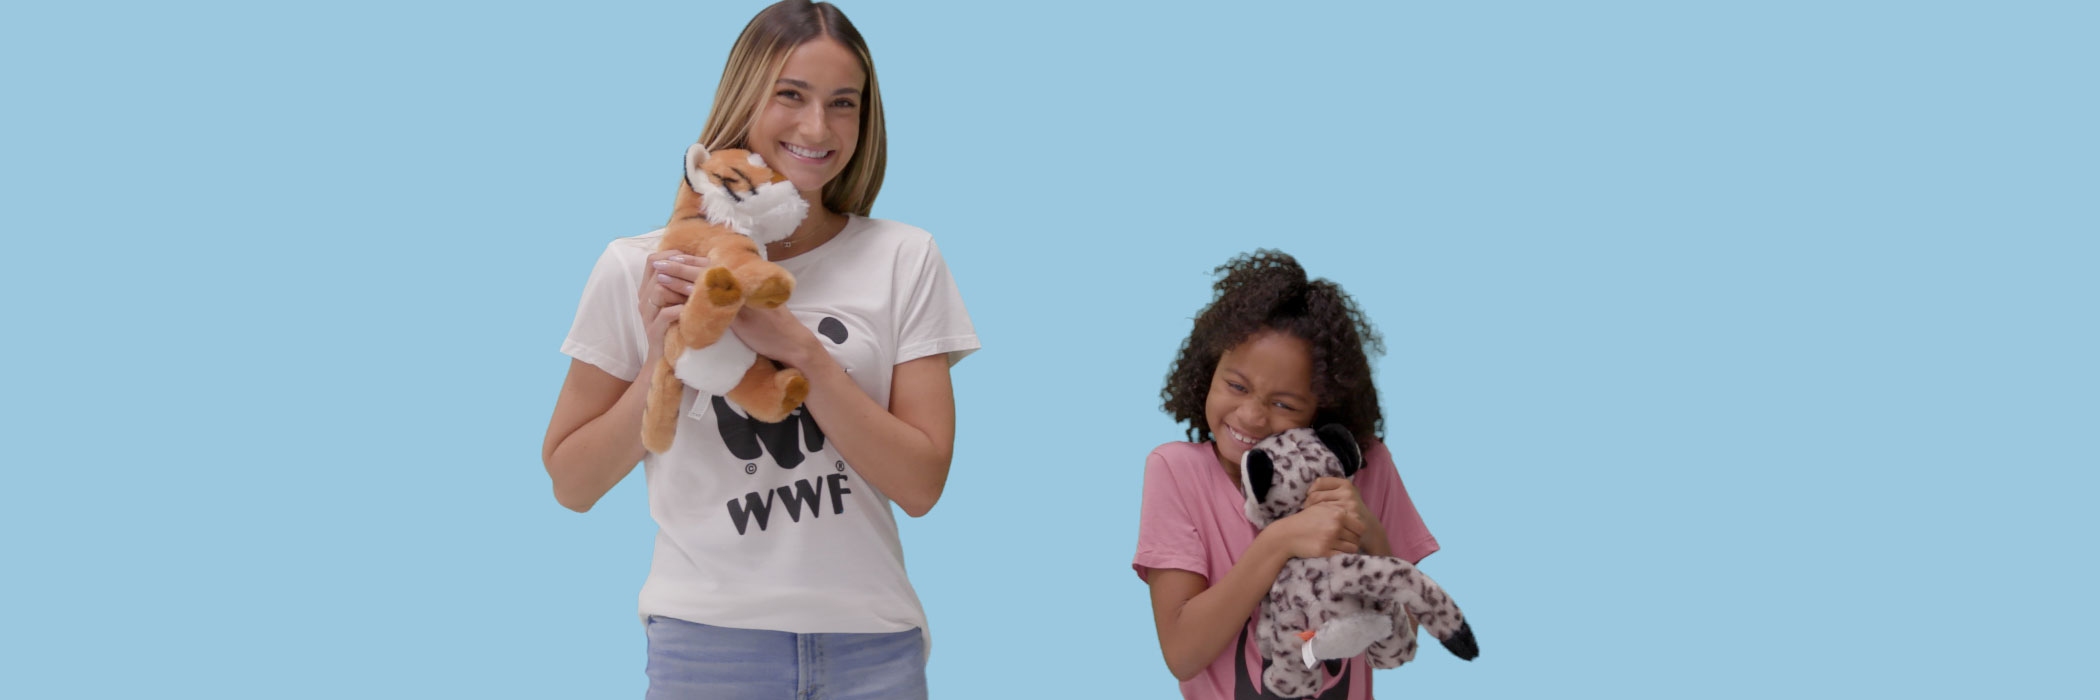 children hold plush animals